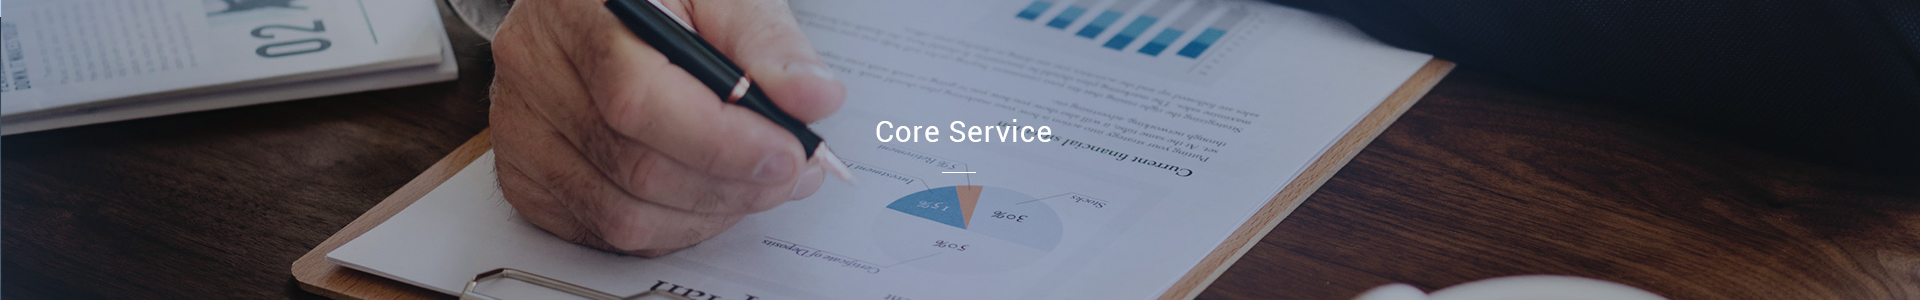 Core Service